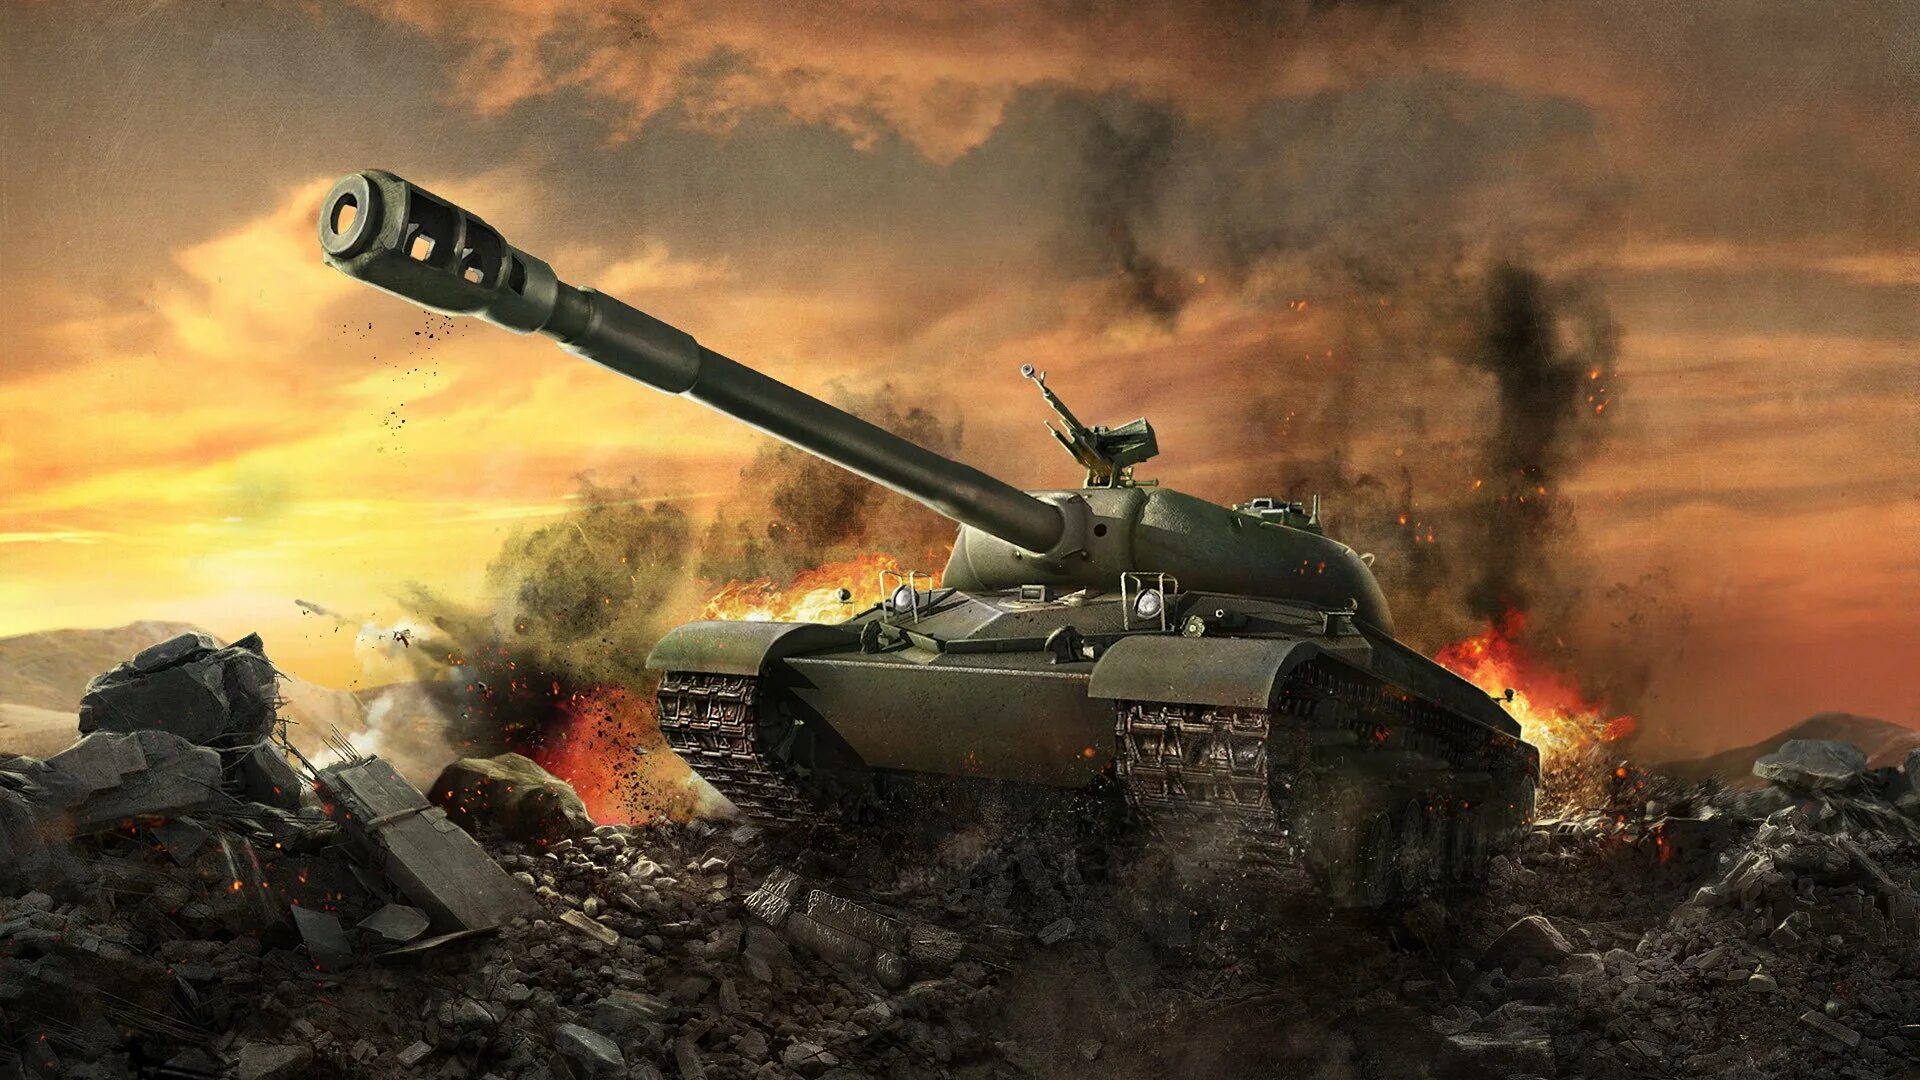 Ворлд оф тенкс. Танк World of Tanks. Т 62 А WOT Blitz. WOT of Blitz танк WZ-111 a5. Постеры танков World of Tanks.